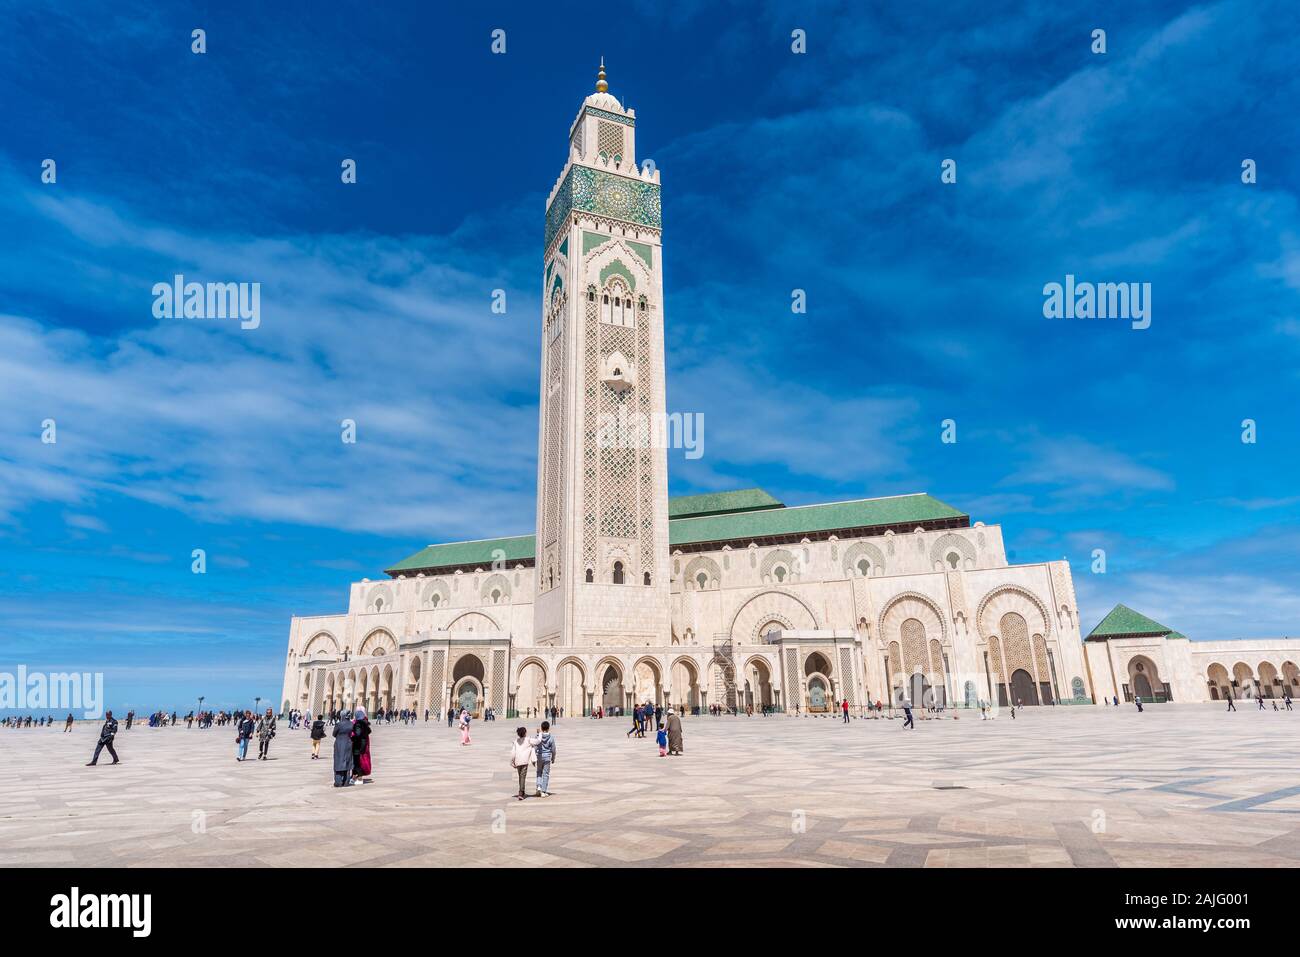 Casablanca, Maroc : l'extérieur de la Mosquée Hassan II, la plus grande mosquée d'Afrique, et le 5ème plus grand au monde. Son minaret est le plus haut du monde Banque D'Images